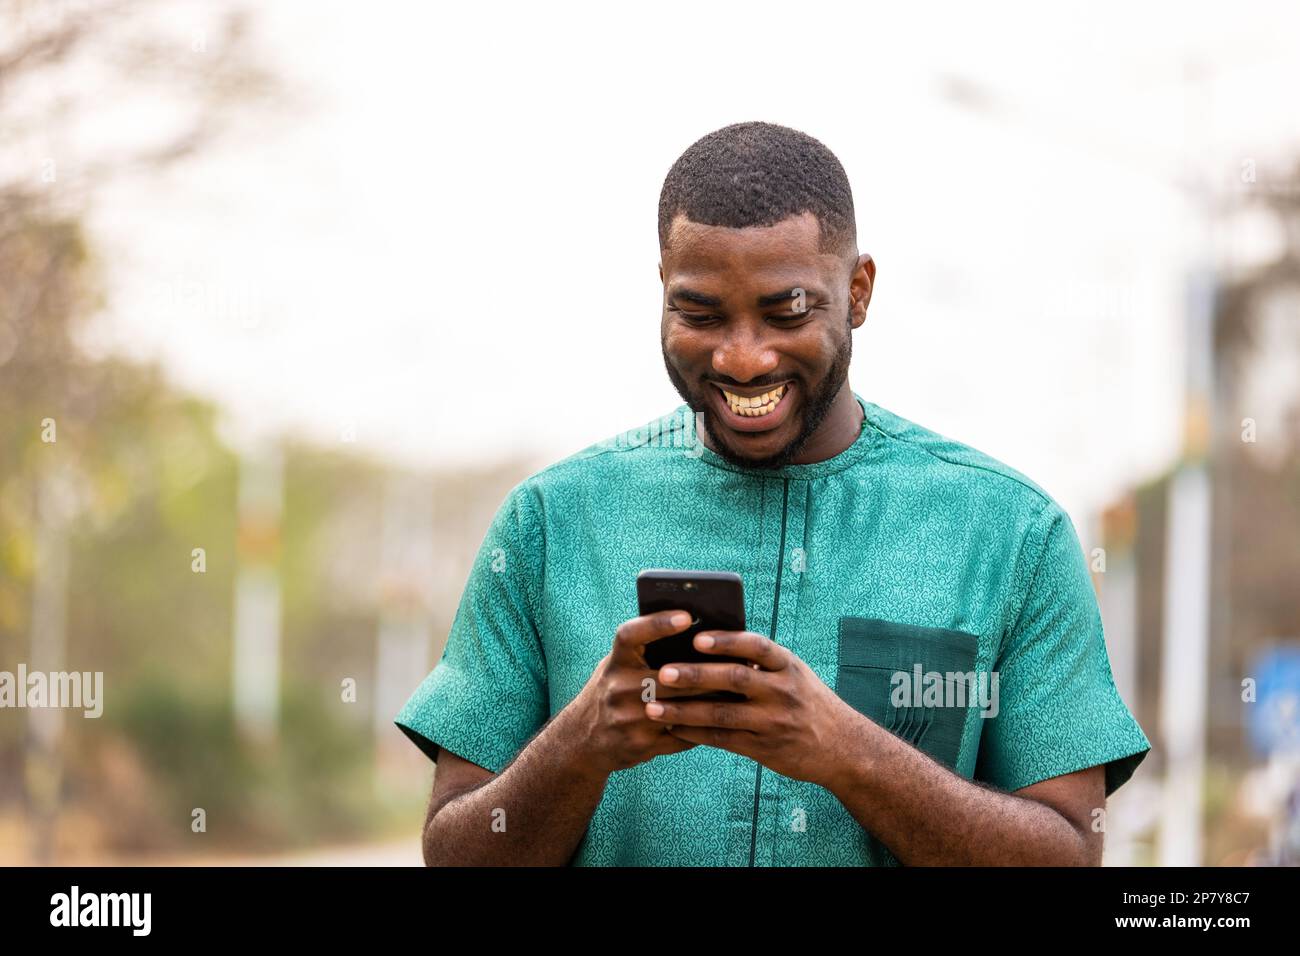 Giovane uomo africano Mobile banking in movimento con smartphone, Ritratto di un uomo ghanaiano in possesso di cellulare Foto Stock